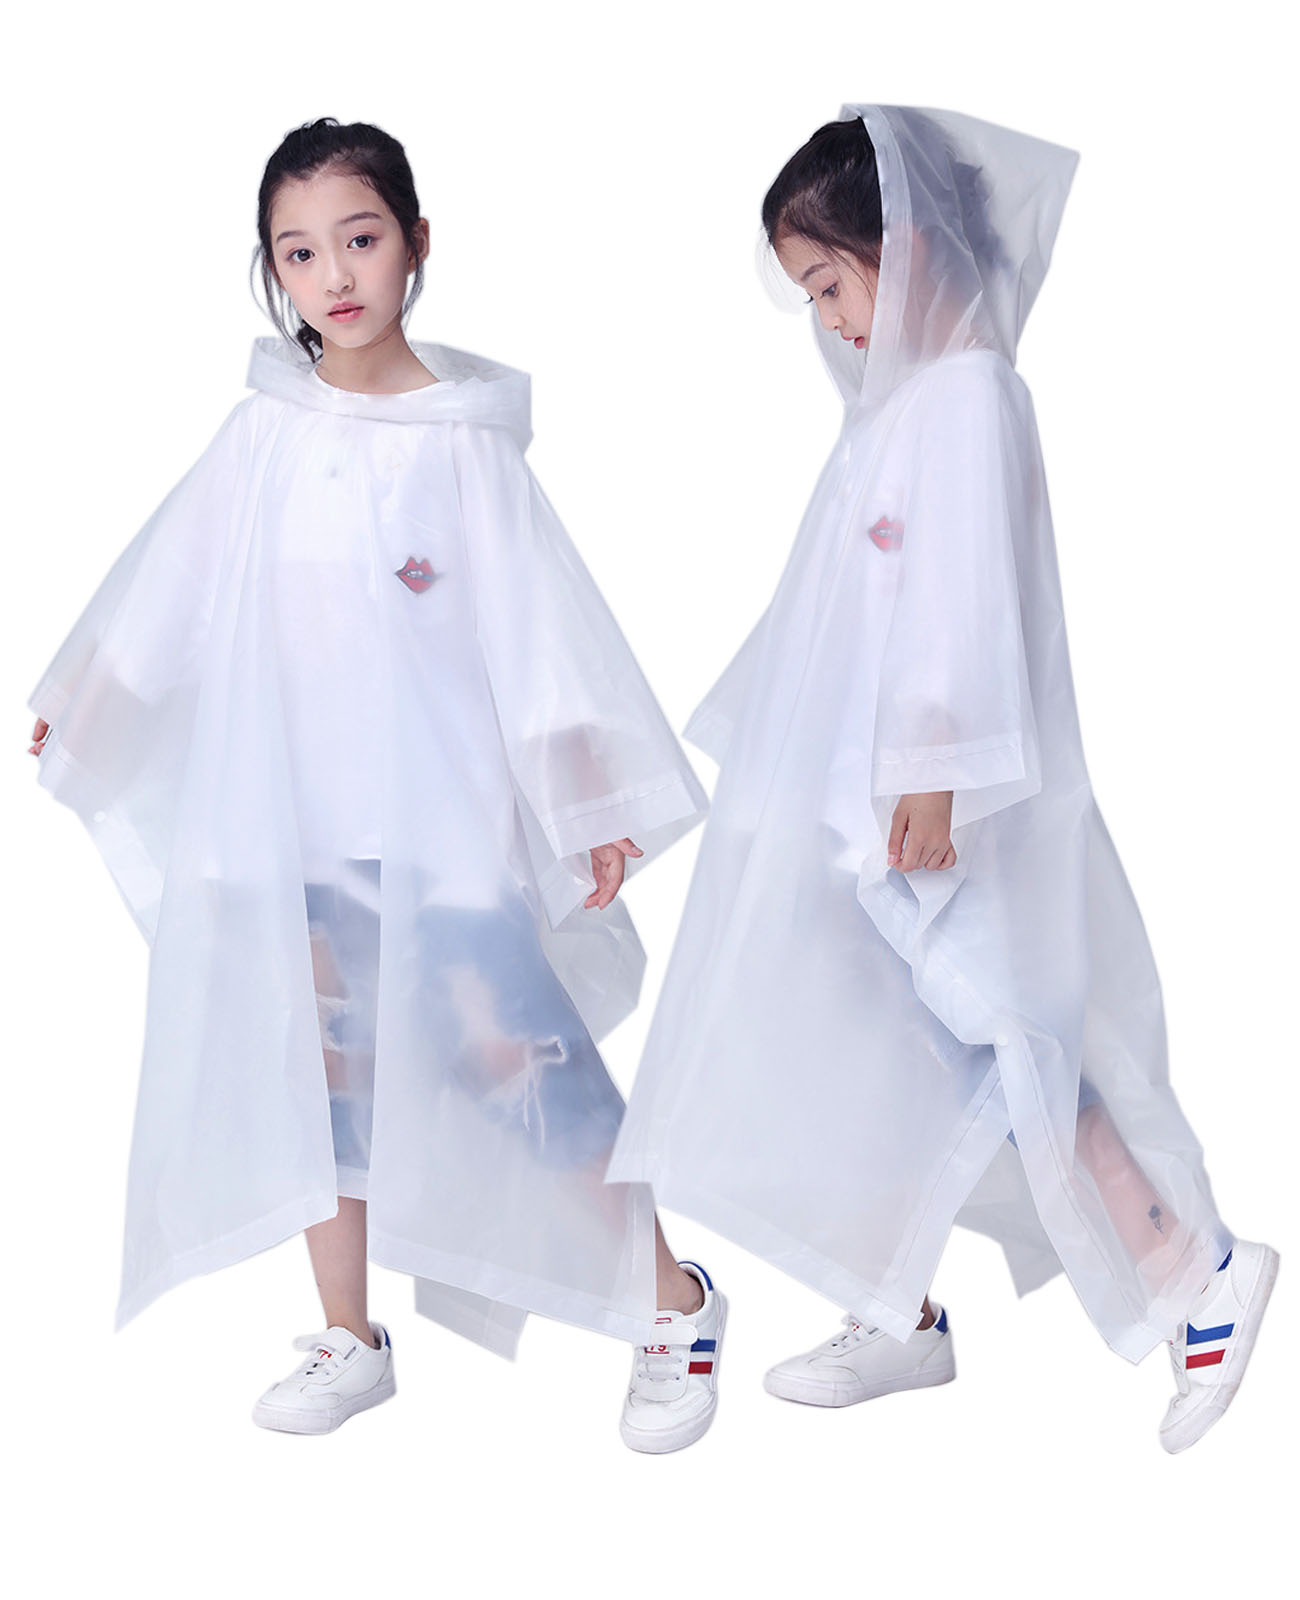 Makonus Rain Ponchos for Kids, [2 Pack] EVA Reusable Raincoat for Boys & Girls, White & White